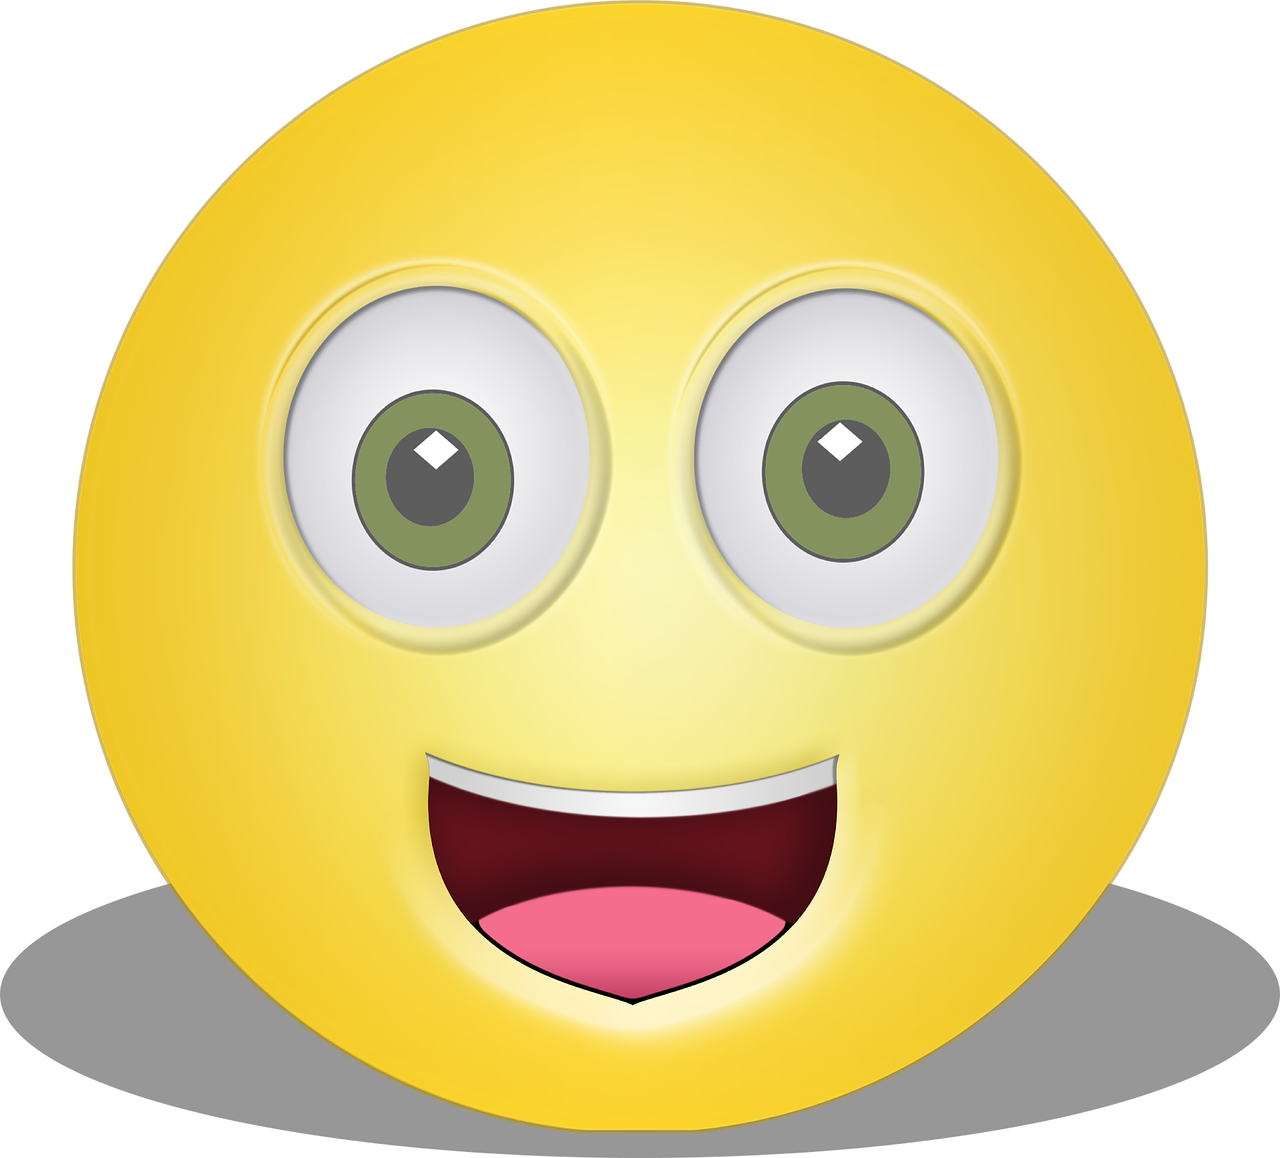 enthusiastic face emoji